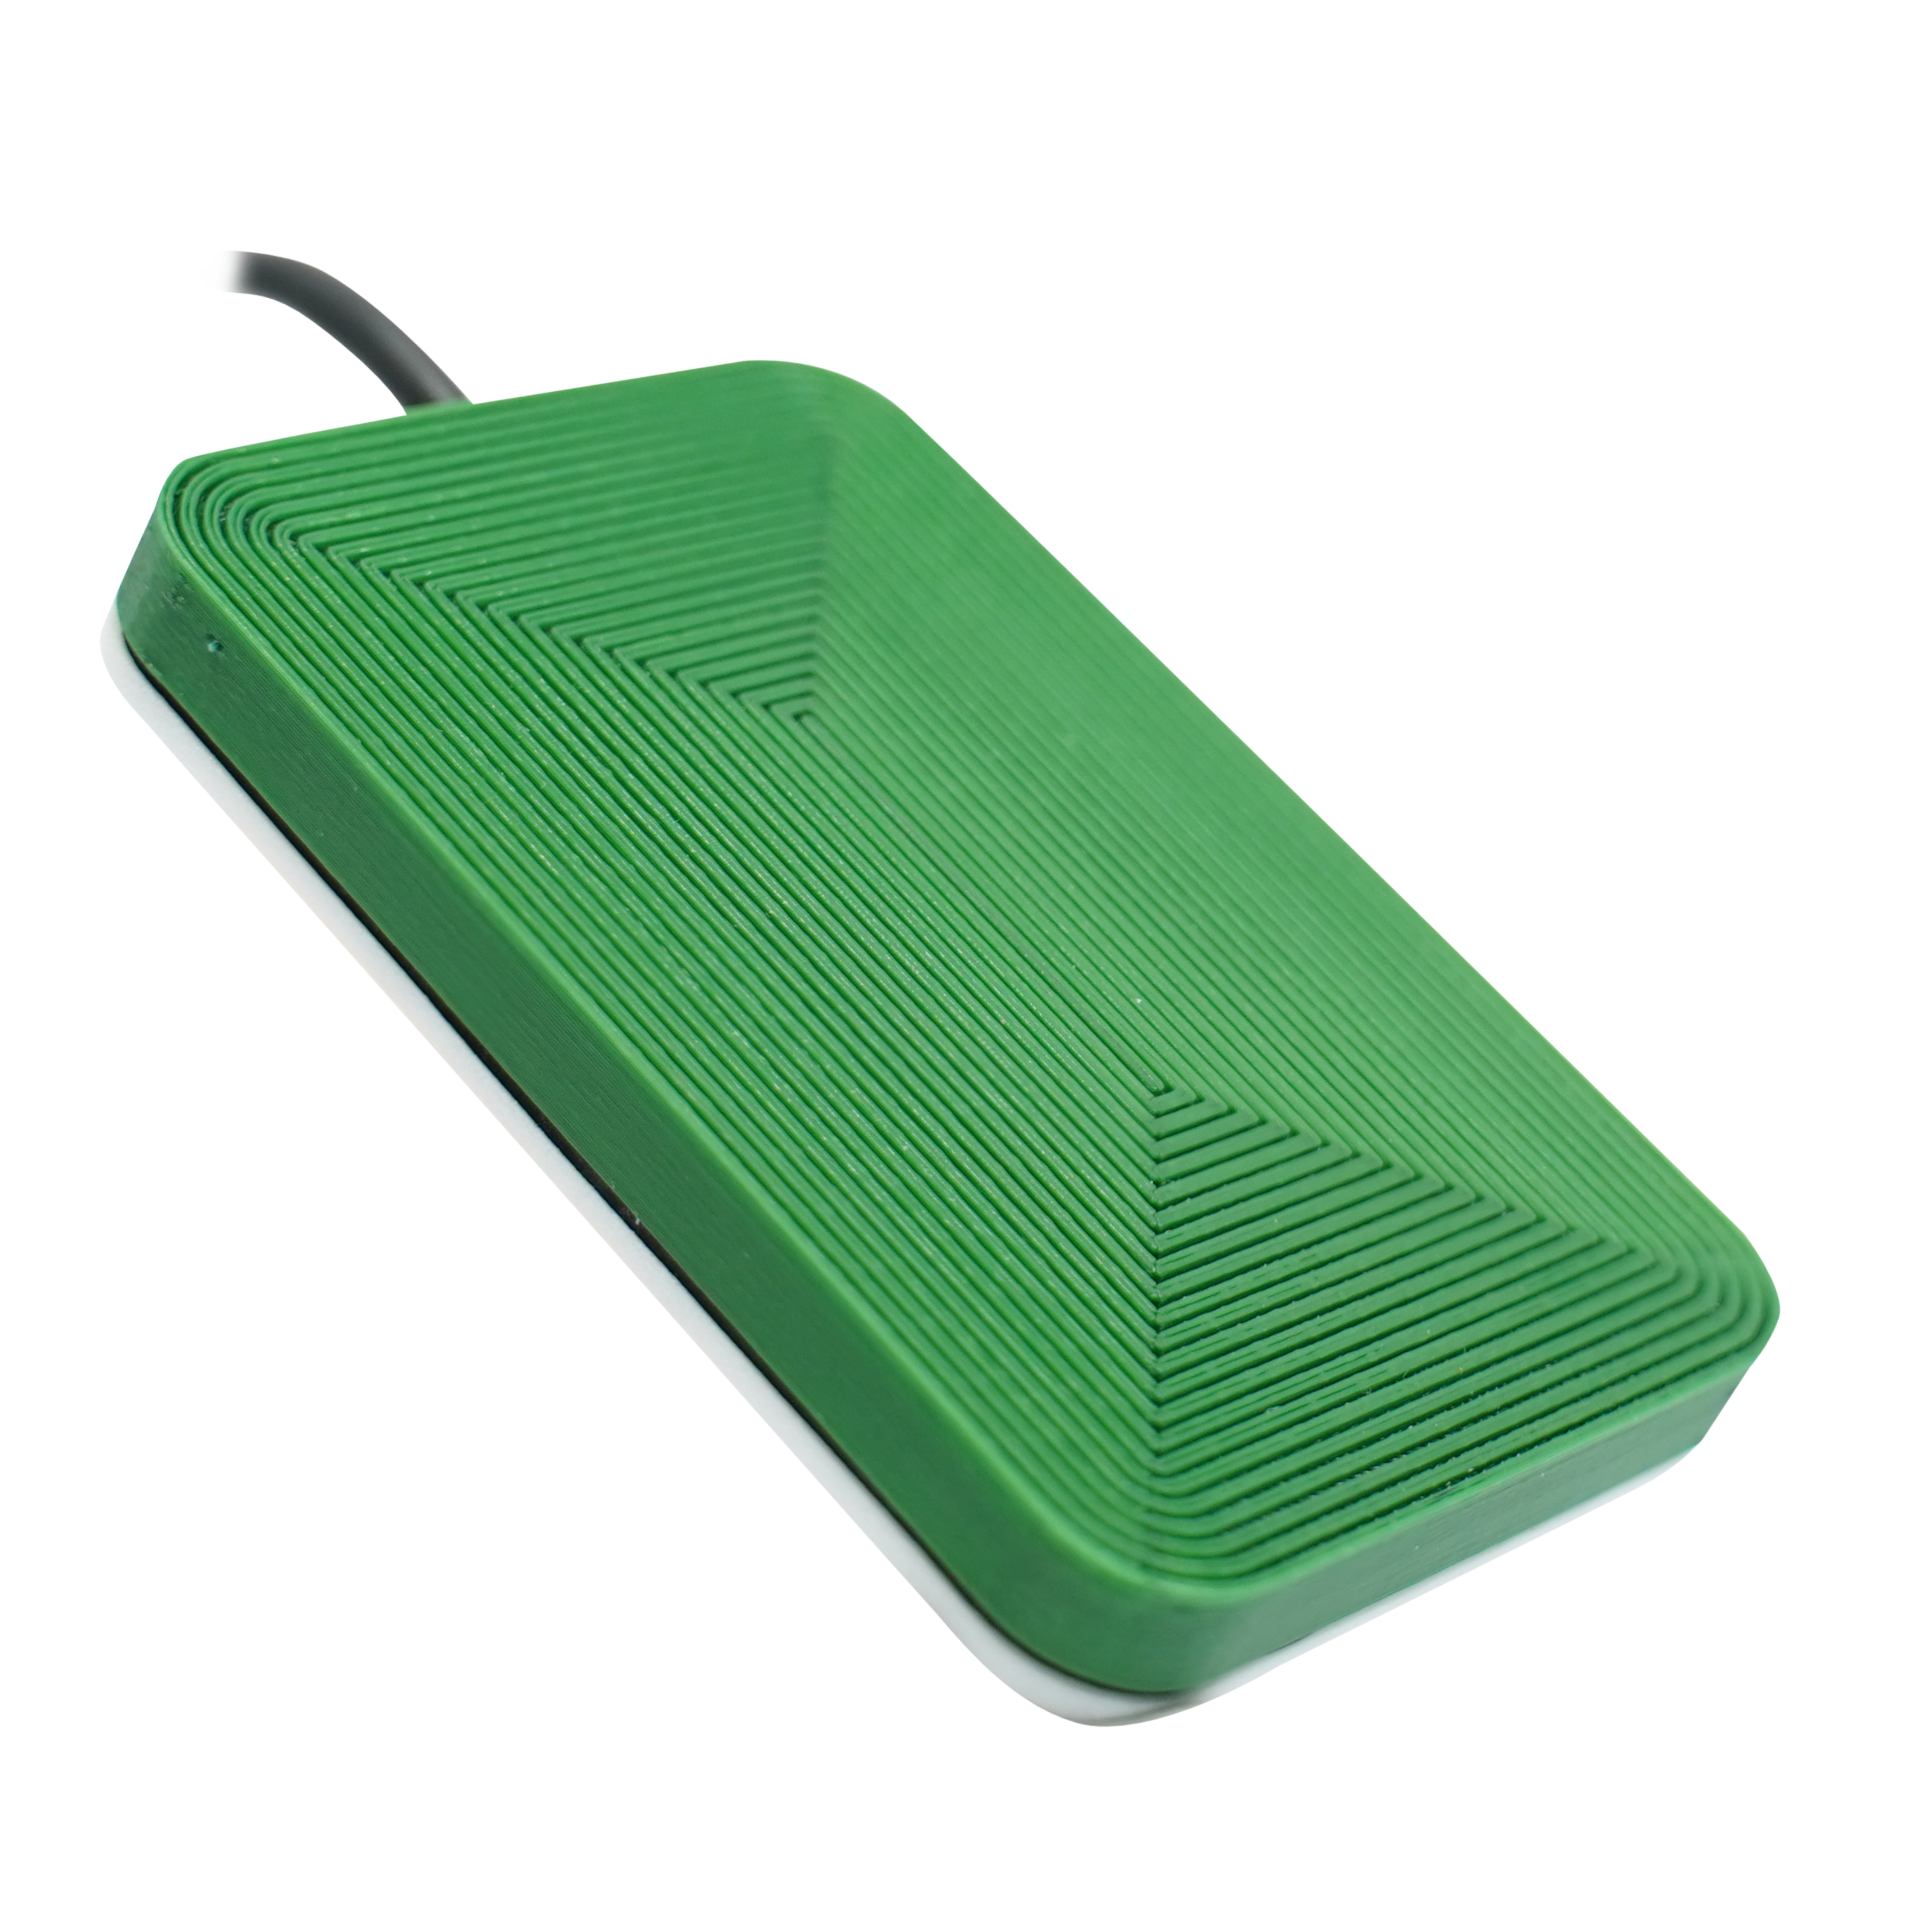 Seitenansicht des grünen NFC Reader mit rillenförmigen Muster